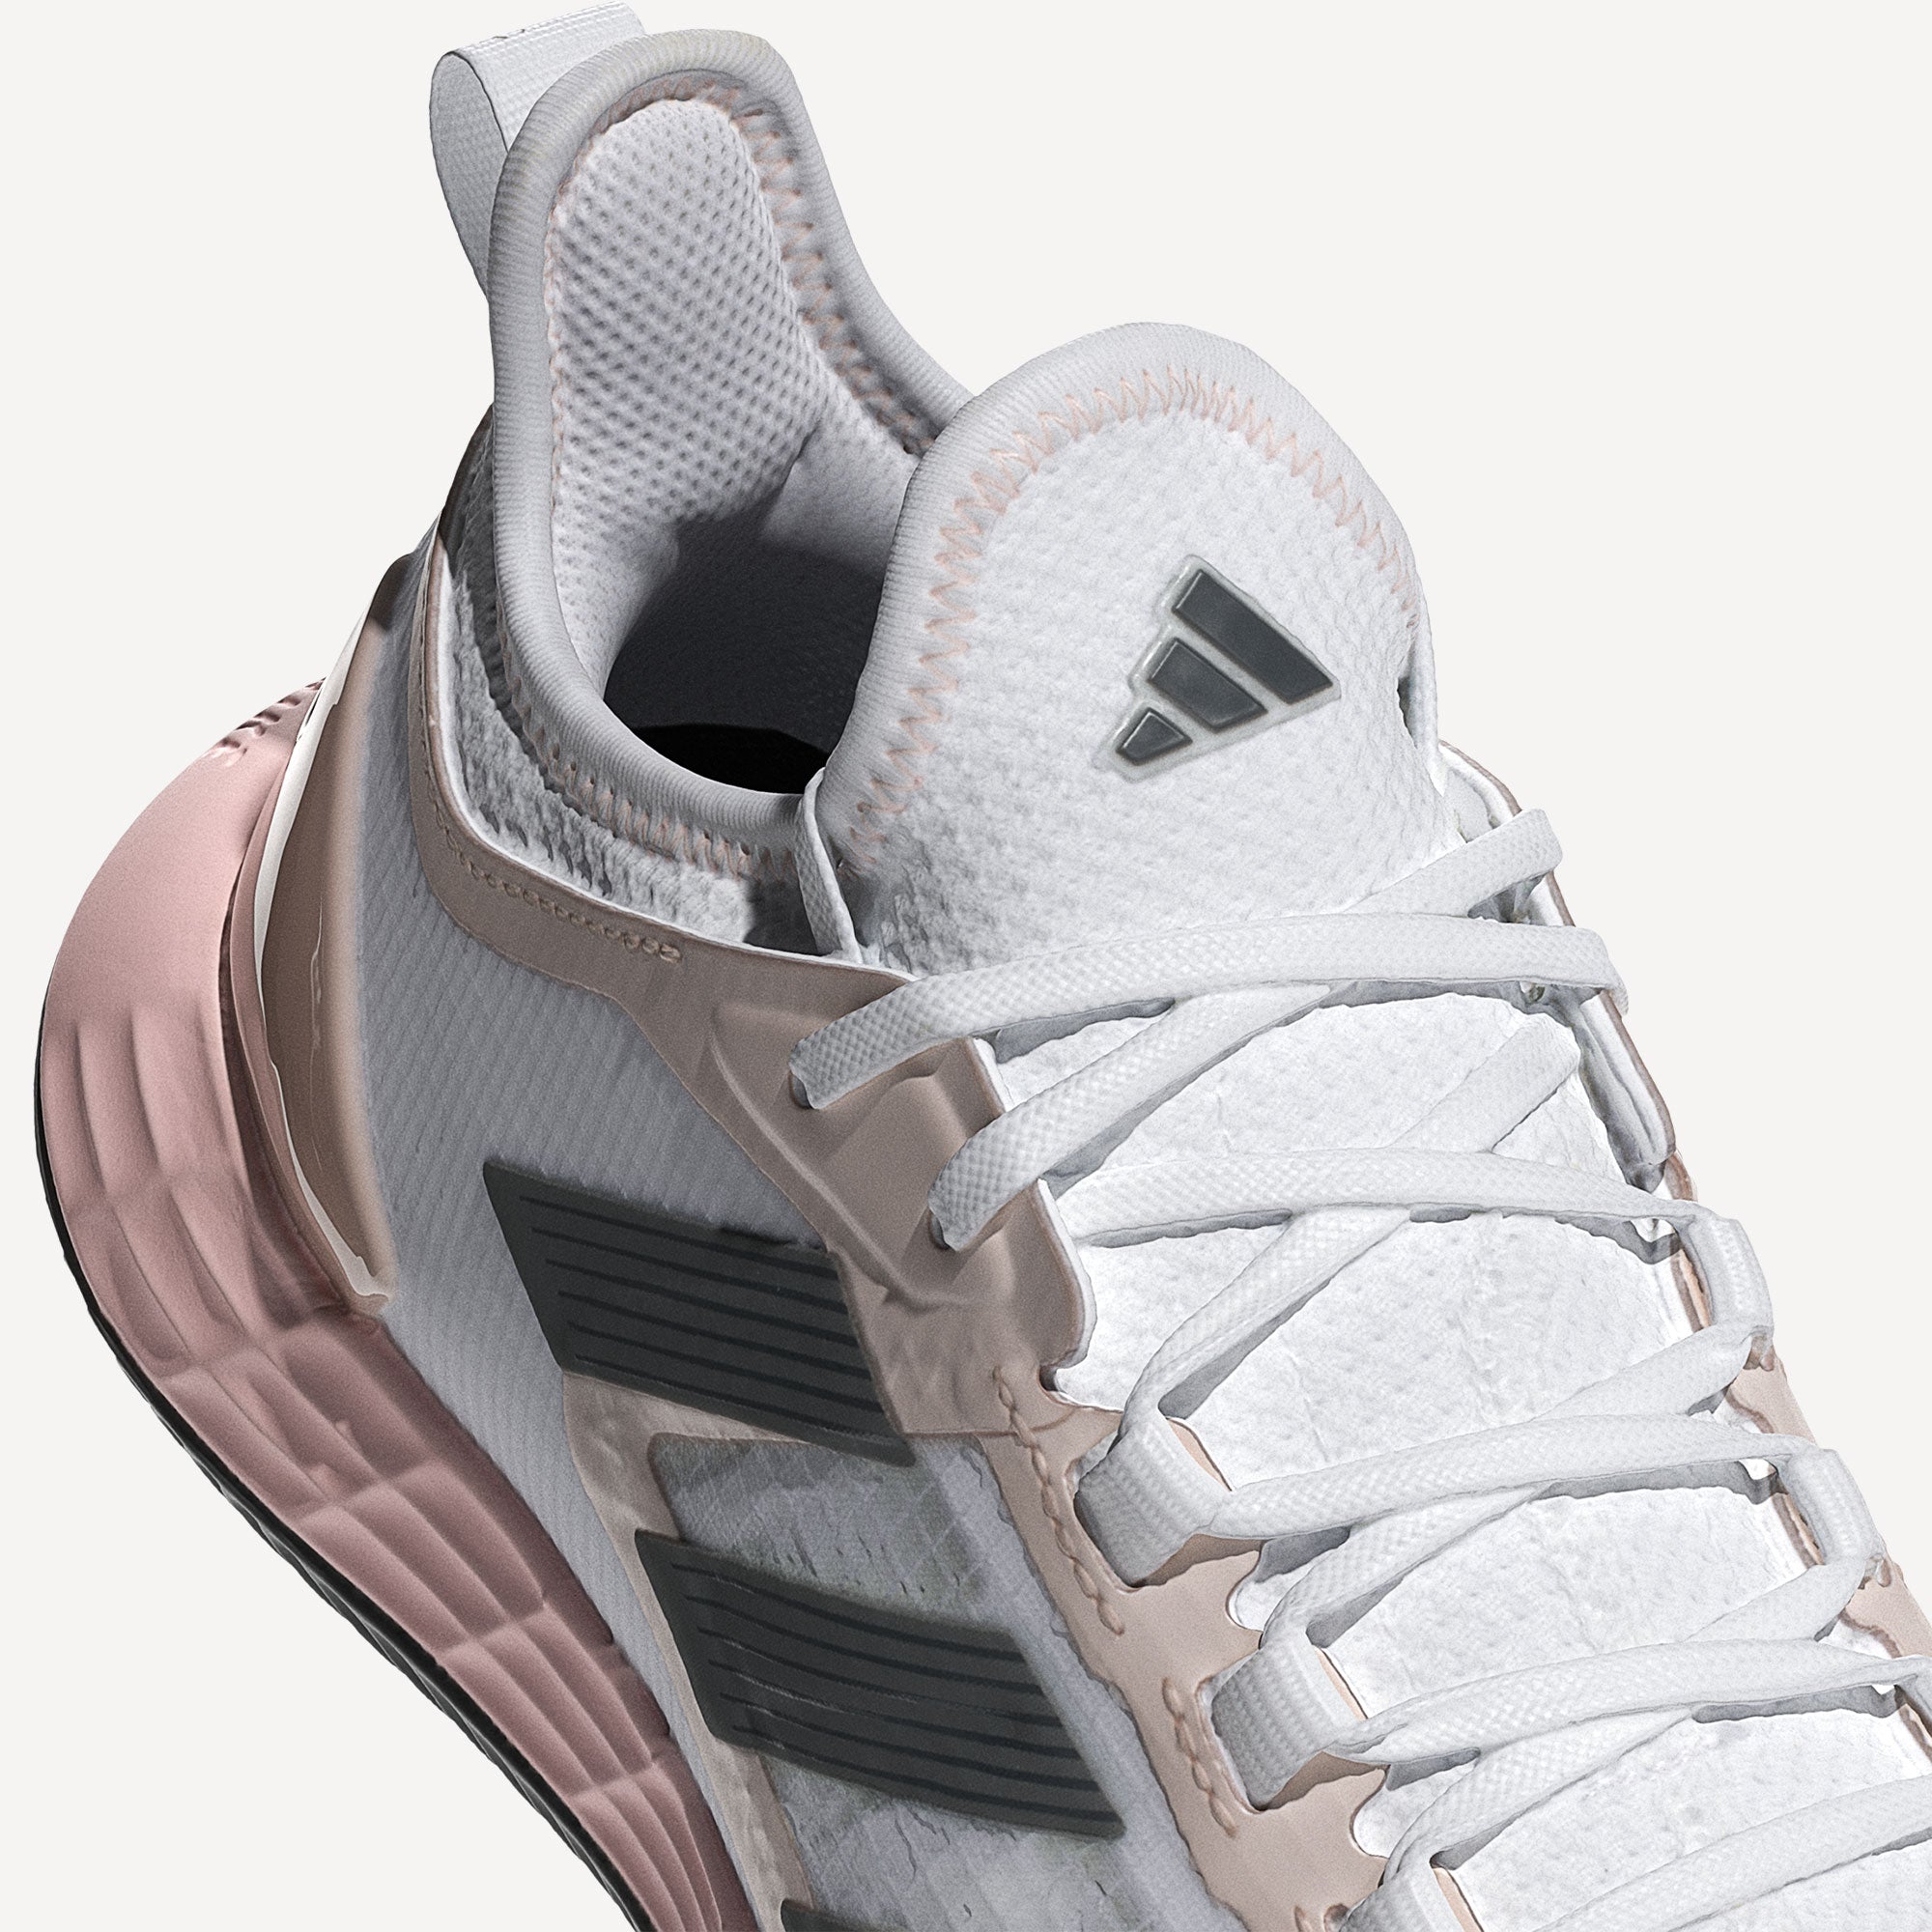 adidas AdiZero Ubersonic 4.1 Women's Clay Court Tennis Shoes - White (7)